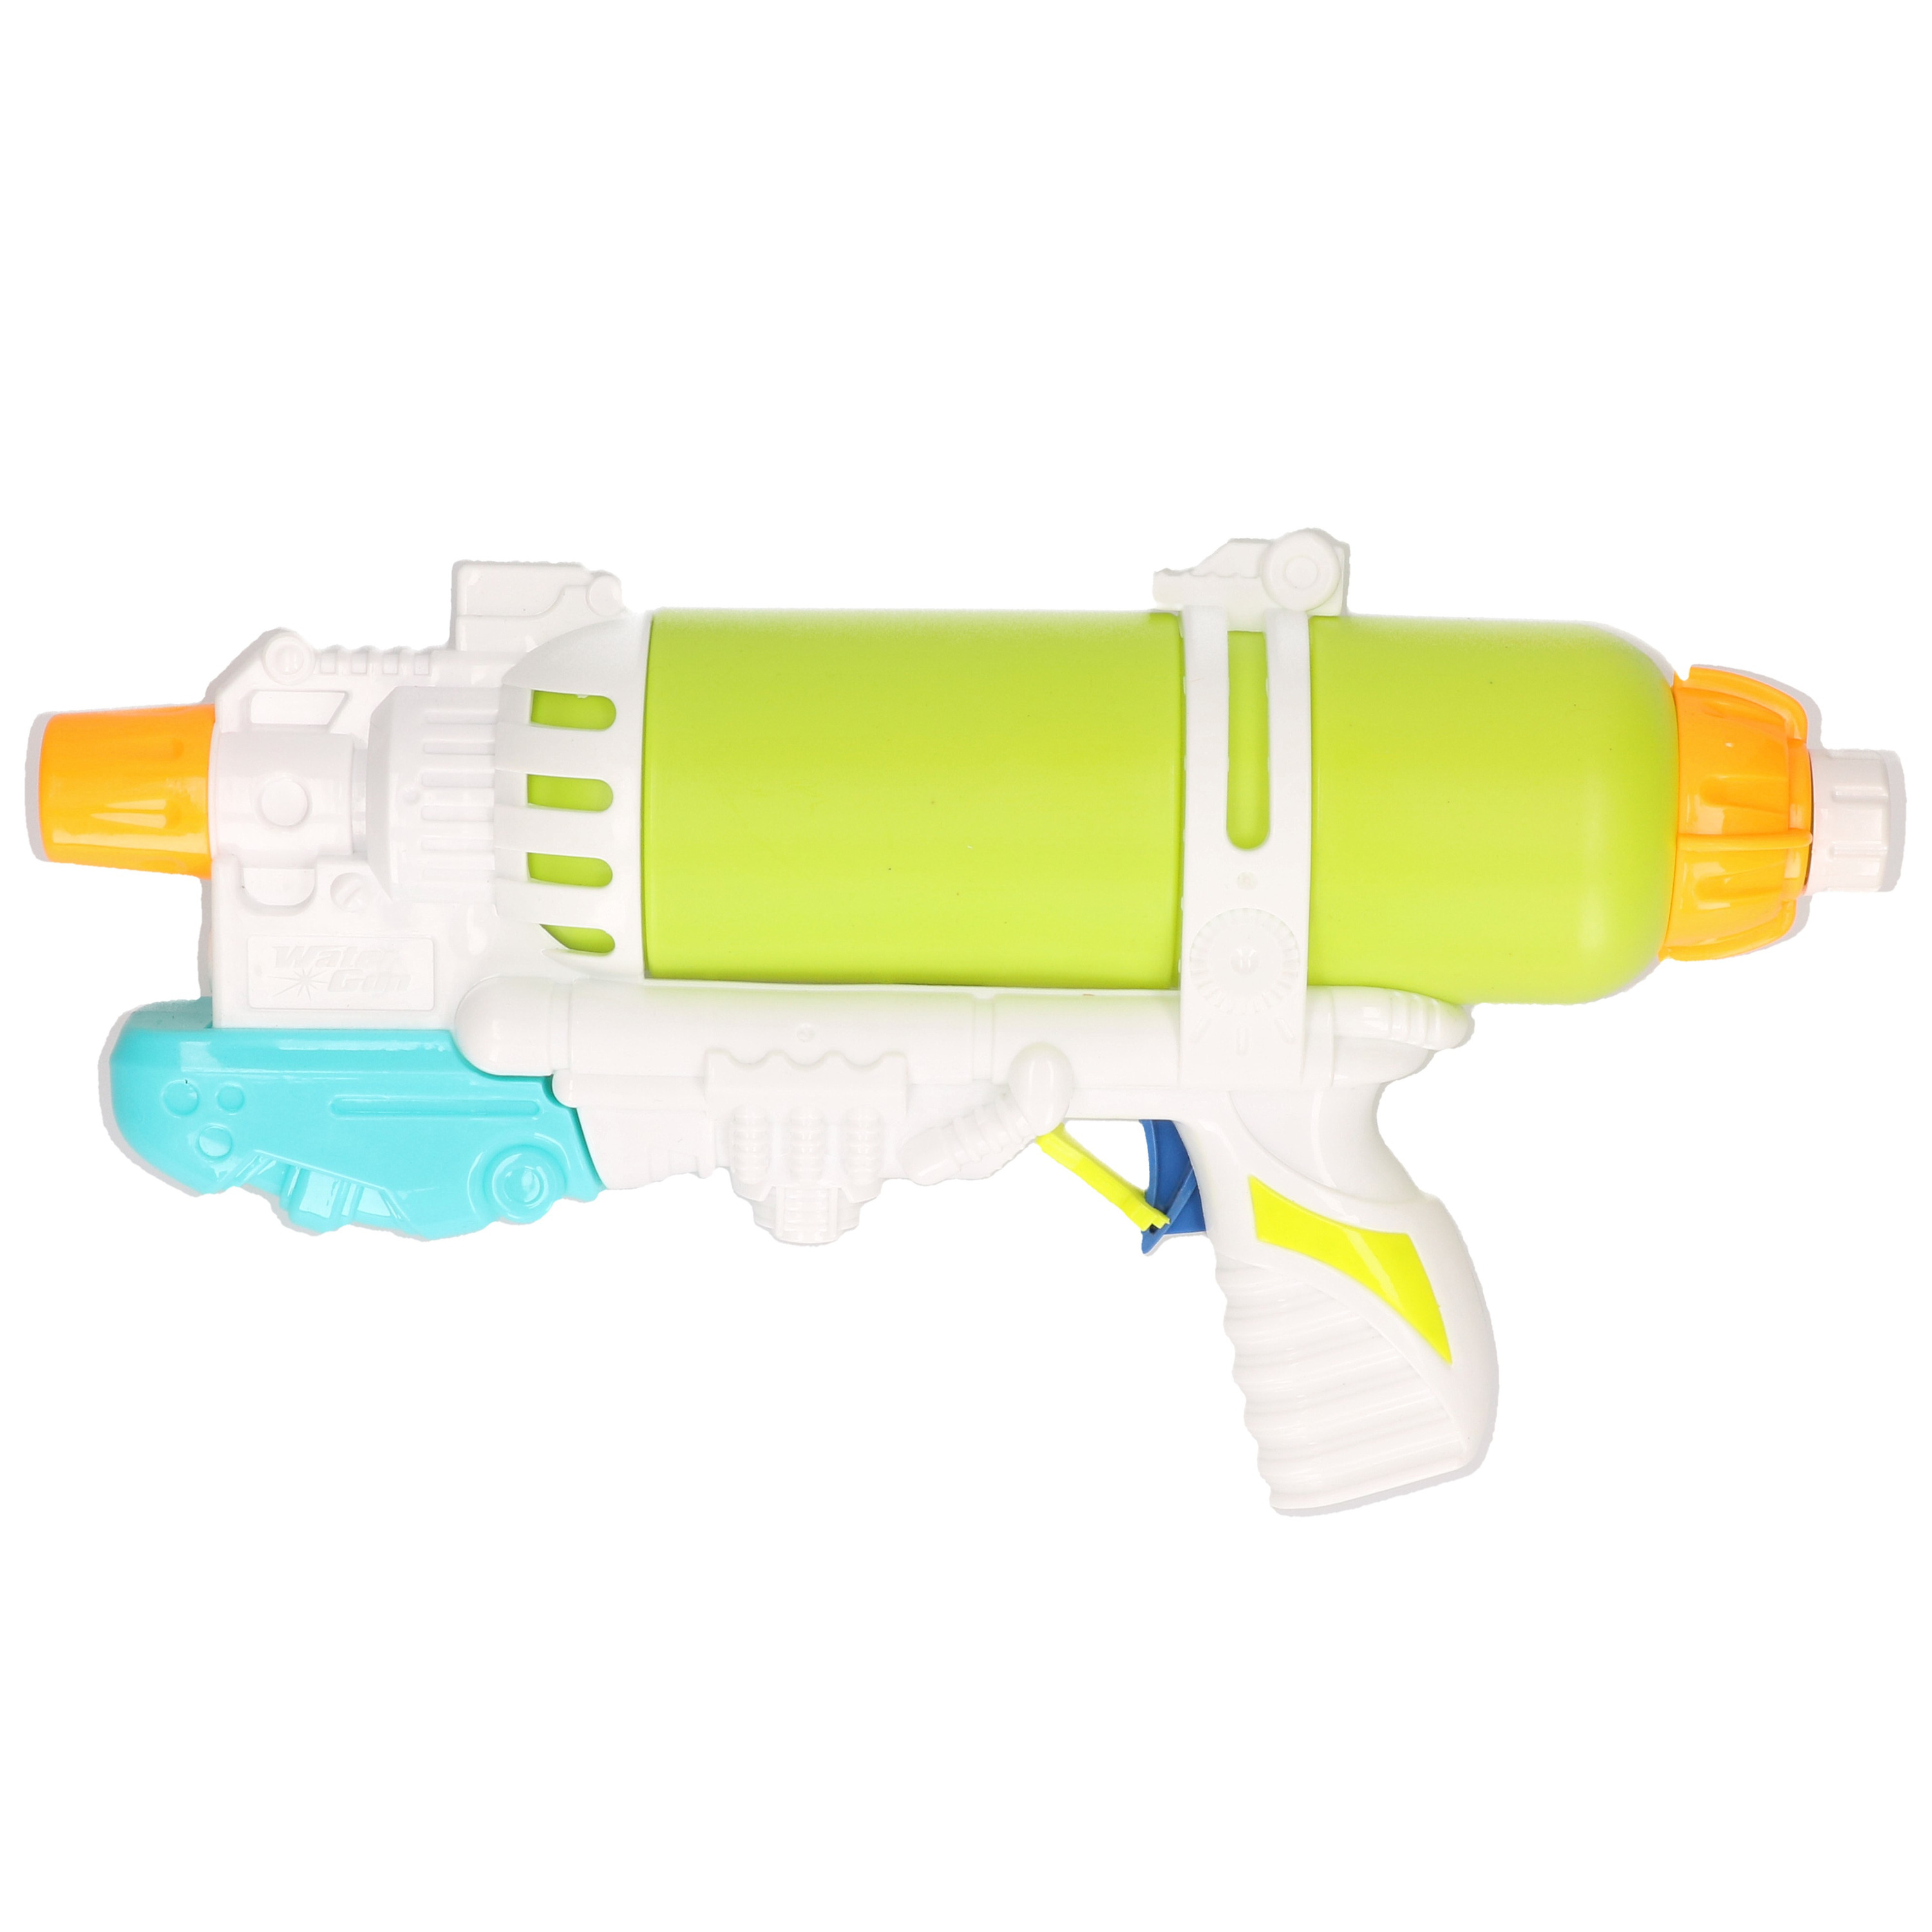 1x Waterpistolen/waterpistool groen/wit van 34 cm kinderspeelgoed - waterspeelgoed van kunststof